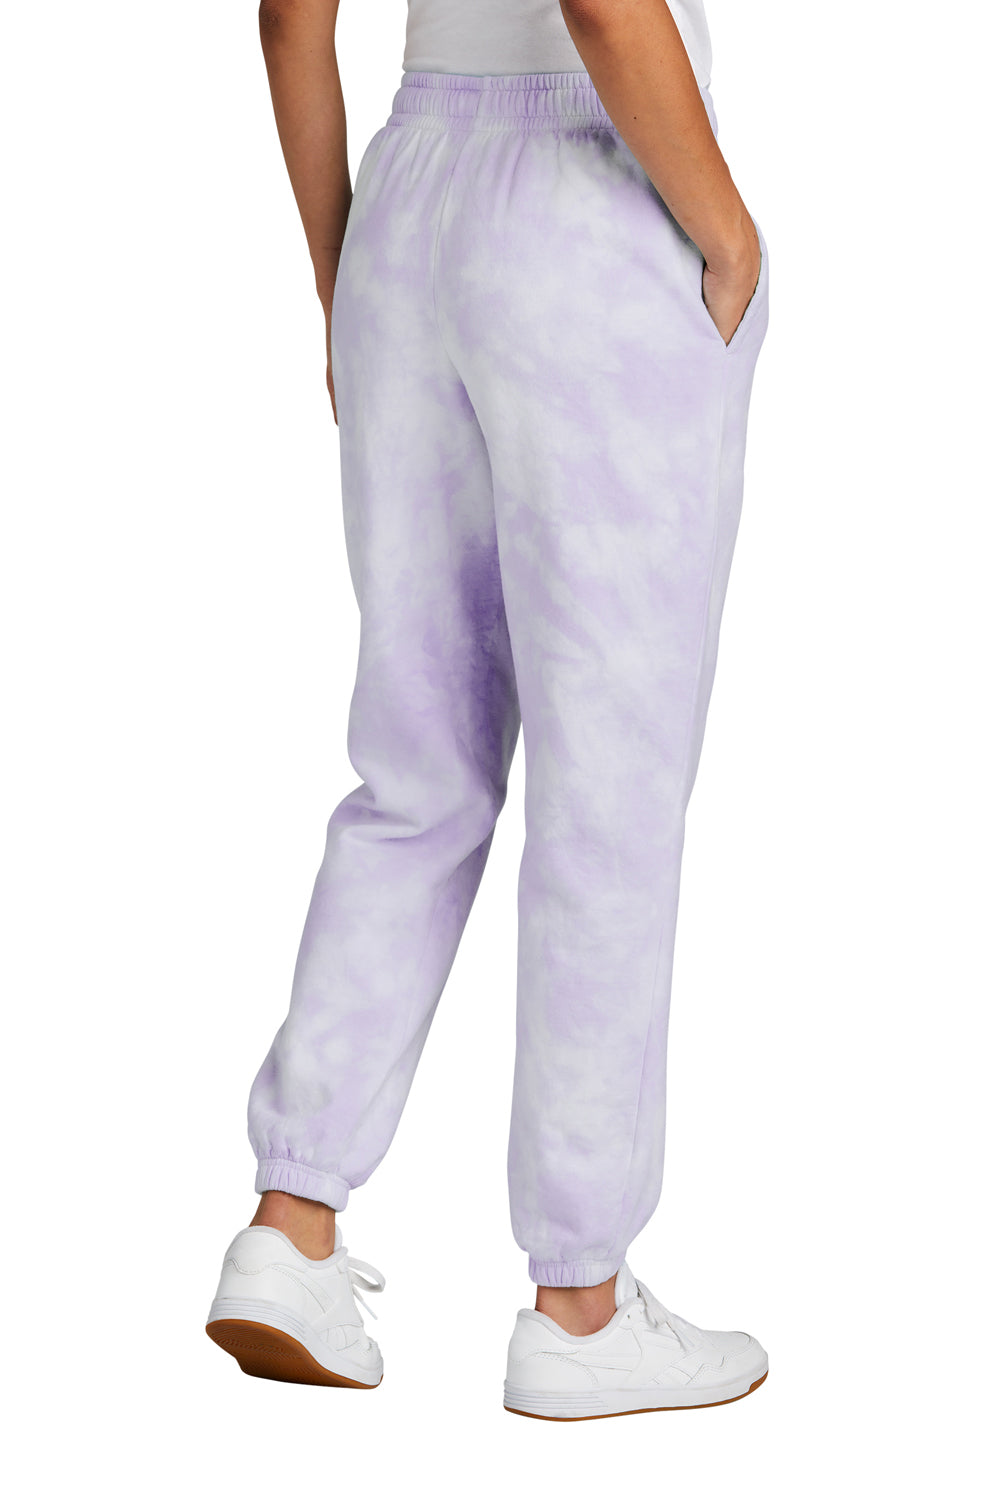 Port & Company Womens Beach Wash Tie Dye Sweatpants w/ Pockets Amethyst Purple Back